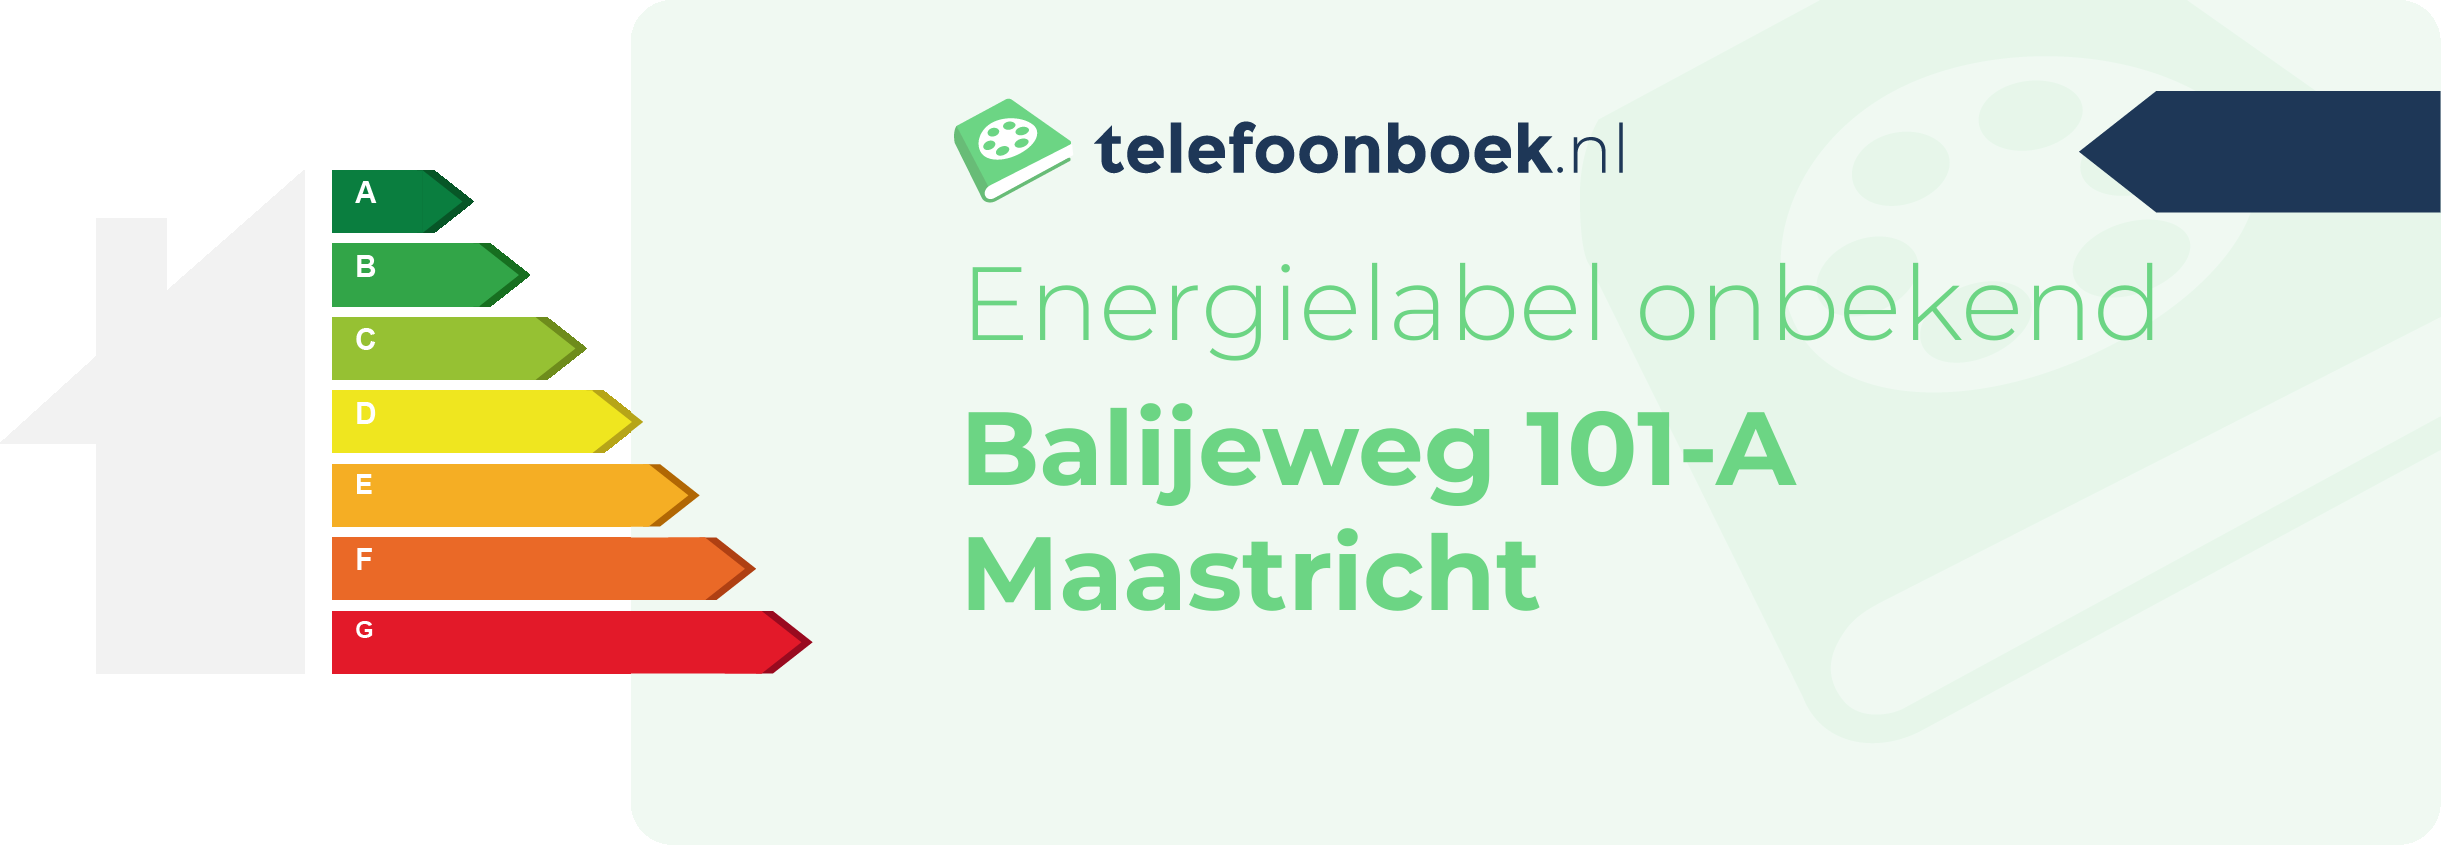 Energielabel Balijeweg 101-A Maastricht